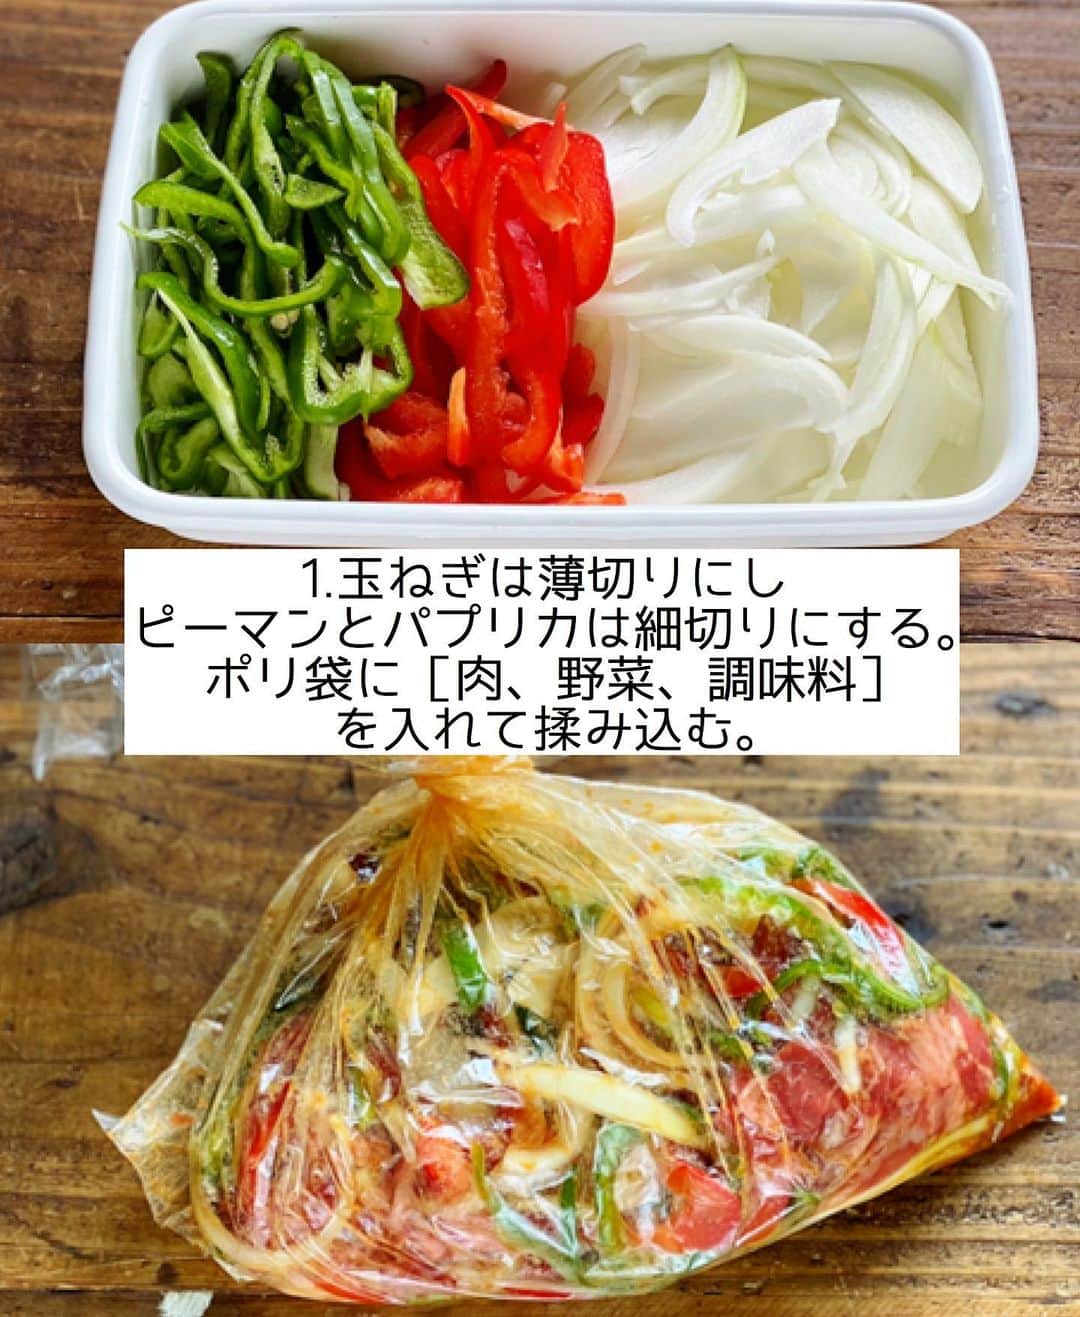 Mizuki【料理ブロガー・簡単レシピ】さんのインスタグラム写真 - (Mizuki【料理ブロガー・簡単レシピ】Instagram)「・ 【#レシピ 】ーーーーーー 超簡単！チーズプルコギ ーーーーーーーーーーーー ⁡ 　 ⁡ おはようございます(*^^*) ⁡ 今日ご紹介させていただくのは とろ〜りチーズをからめて食べる \ チーズプルコギ / ⁡ 味付けは下味のみで漬け込みなし！ 全部揉んで炒めるだけ！の 超〜簡単レシピです(*´艸`) ⁡ これひとつで お肉も野菜も食べられて 満足感がありますよ〜♡ フライパンひとつでできるので よかったらお試し下さいね♩ ⁡ 《追記》 インスタ不具合でしょうか？？ コメントが見られなくなっています😢 ⁡ ⁡  ＿＿＿＿＿＿＿＿＿＿＿＿＿＿＿＿＿＿＿＿＿ 【2人分】 牛(又は豚)こま切れ肉...200g 玉ねぎ...1/2個 ピーマン...2個 赤パプリカ...1/2個 ●砂糖・醤油・酒・ごま油...各大1 ●オイスターソース...小2 ●(好みで)豆板醤...小1/2 ●にんにくチューブ...3cm ピザ用チーズ...80g〜 ⁡ 1.玉ねぎは薄切りにする。ピーマンとパプリカは細切りにする。ポリ袋に牛肉(又は豚肉)、玉ねぎ、ピーマン、パプリカ、●を入れて揉み込む。 2.フライパンを中火で熱して1を炒めて火を通す。 3.中央を空け、チーズを入れて蓋をのせ、チーズがとろけるまで加熱する。 ￣￣￣￣￣￣￣￣￣￣￣￣￣￣￣￣￣￣￣￣￣ ⁡ ⁡ ⁡ 《ポイント》 ♦︎豚肉で作っても美味しいです♩ ♦︎チーズの量はお好みで加減して下さい♩ ♦︎チーズがかたまらないうちに、出来たてをお召し上がり下さいね♩ ⁡ ⁡ ⁡ ⁡ ⁡ ⁡ ⁡ ⁡ \ 新刊予約開始しました /(9月24日発売) ⁡ 🔹🔹🔹🔹🔹🔹🔹🔹🔹🔹🔹🔹 今日のごはんこれに決まり！ #Mizukiのレシピノート 決定版 500品 🔹🔹🔹🔹🔹🔹🔹🔹🔹🔹🔹🔹 ⁡ 総レシピ6000点の中からレシピを厳選！ まさかの【500レシピ掲載】しました⭐️ (もはや辞典...) ⁡ 肉や魚のメインおかずはもちろん 副菜、丼、麺、スープ、お菓子 ハレの日のレシピ、鍋のレシピまで 全てこの一冊で完結！！ ⁡ ⁡ 🎁新刊予約でエプロンが当たる🎁 プレゼントキャンペーン実施中 ￣￣￣￣￣￣￣￣￣￣￣￣￣￣￣￣￣￣￣￣￣ 【応募方法】 ❶1枚目に表紙画像 2枚目にAmazonで予約したことがわかる画像 (どちらもスクショでOK)を貼りつける。 ❷ハッシュタグ【#Mizukiのレシピノート 】 をつけて投稿！ ￣￣￣￣￣￣￣￣￣￣￣￣￣￣￣￣￣￣￣￣￣￣ ⁡ ⁡ ⁡ ⁡ ⁡ ＿＿＿＿＿＿＿＿＿＿＿＿＿＿＿＿ 🟥YouTube 料理動画配信中🟥 ￣￣￣￣￣￣￣￣￣￣￣￣￣￣￣￣ 料理とお菓子の簡単レシピを ご紹介しています☺️💓 ⁡ 【奇跡のキッチン】で検索🔍 (ハイライトからも飛べます✨) ￣￣￣￣￣￣￣￣￣￣￣￣￣￣￣￣ ⁡ ⁡ ⁡ ＿＿＿＿＿＿＿＿＿＿＿＿＿＿＿＿ 🔶🔶recipe book🔶🔶 ￣￣￣￣￣￣￣￣￣￣￣￣￣￣￣￣ ホケミレシピの決定版♩ \はじめてでも失敗しない/ 📙#ホットケーキミックスのお菓子 ⁡ NHKまる得マガジンテキスト☆ #ホットケーキミックス で ⁡ 📗絶品おやつ&意外なランチ ⁡ しんどくない献立、考えました♩ \𝟣𝟧分でいただきます/ 📕#Mizukiの2品献立 ⁡ 和食をもっとカジュアルに♩ \毎日のごはんがラクになる/ 📘#Mizukiの今どき和食  ＿＿＿＿＿＿＿＿＿＿＿＿＿＿＿＿＿ ⁡ ⁡ ⁡ ⁡ #チーズプルコギm #チーズプルコギ #プルコギ #チーズ #韓国料理 #mizuki #簡単レシピ #時短レシピ #節約レシピ #料理 #料理初心者  #時短ごはん #節約ごはん #フーディーテーブル #おうちごはん #デリスタグラマー #おうちごはんlover #料理好きな人と繋がりたい #写真好きな人と繋がりたい #foodpick#cooking#recipe #foodporn」8月26日 7時13分 - mizuki_31cafe